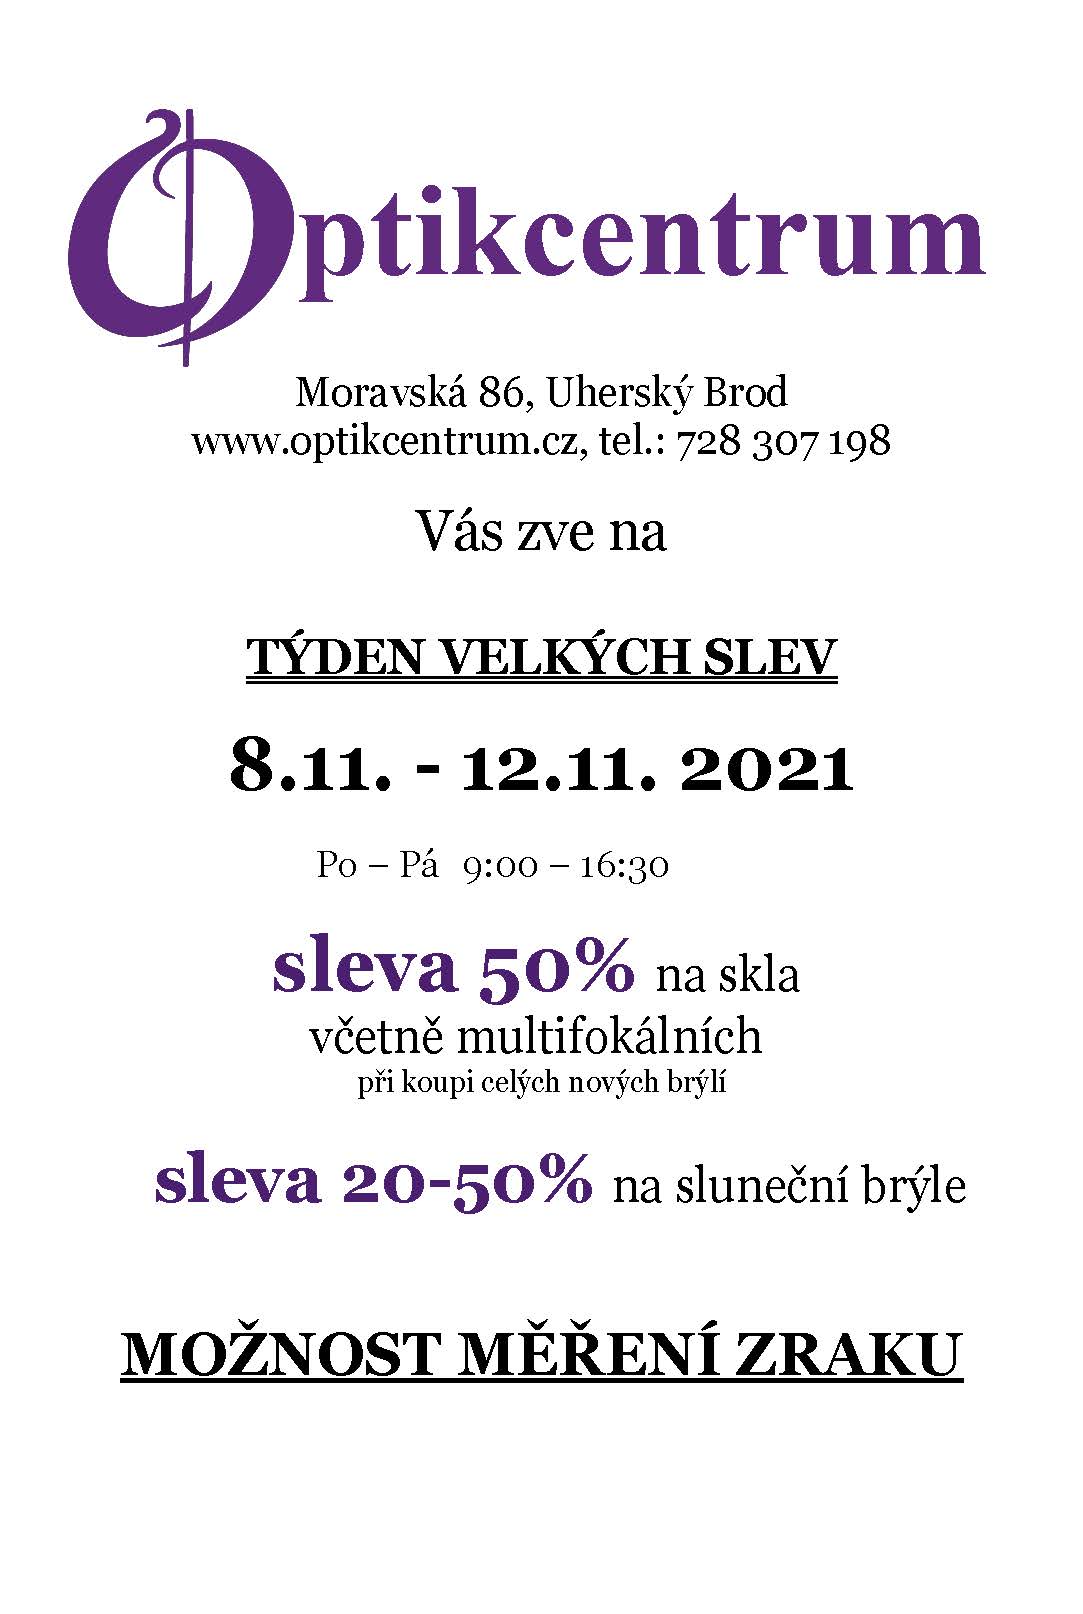 Týden velkých slev v Uherském Brodě 8.11. – 12.11.2021